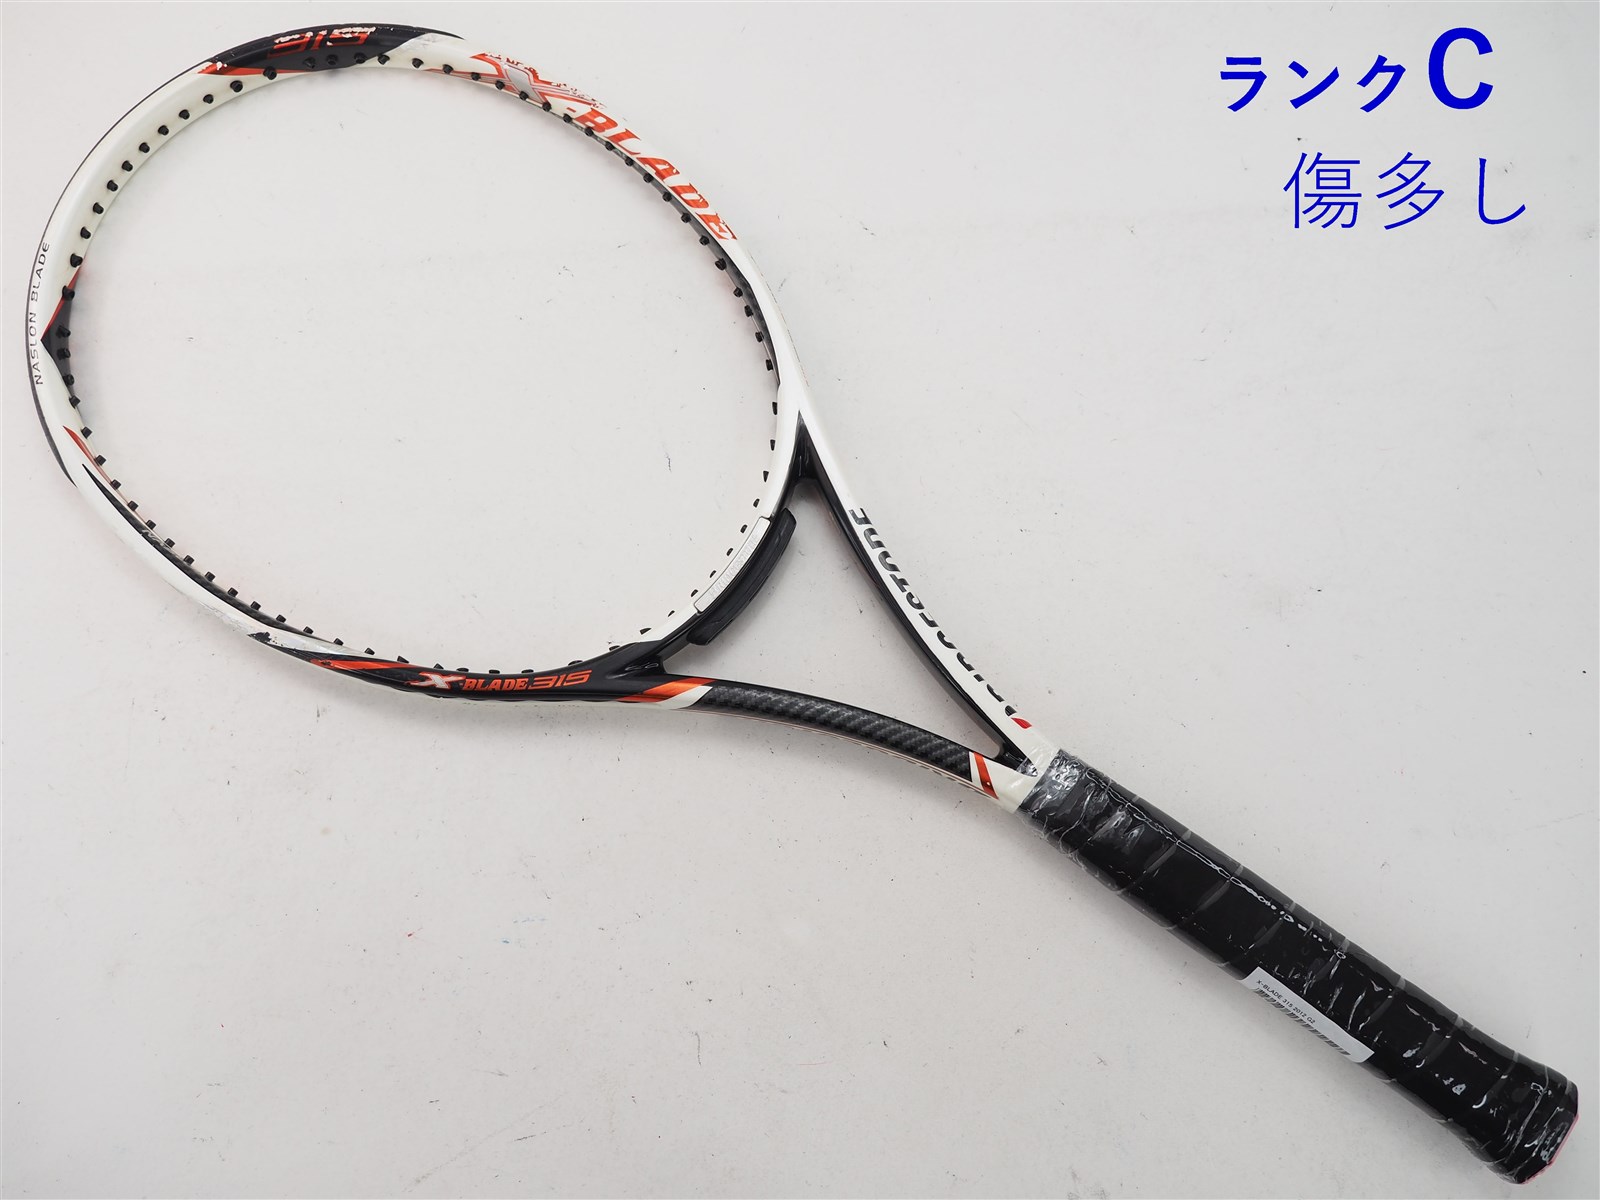 テニスラケット ブリヂストン エックスブレード 315 2010年モデル (G2